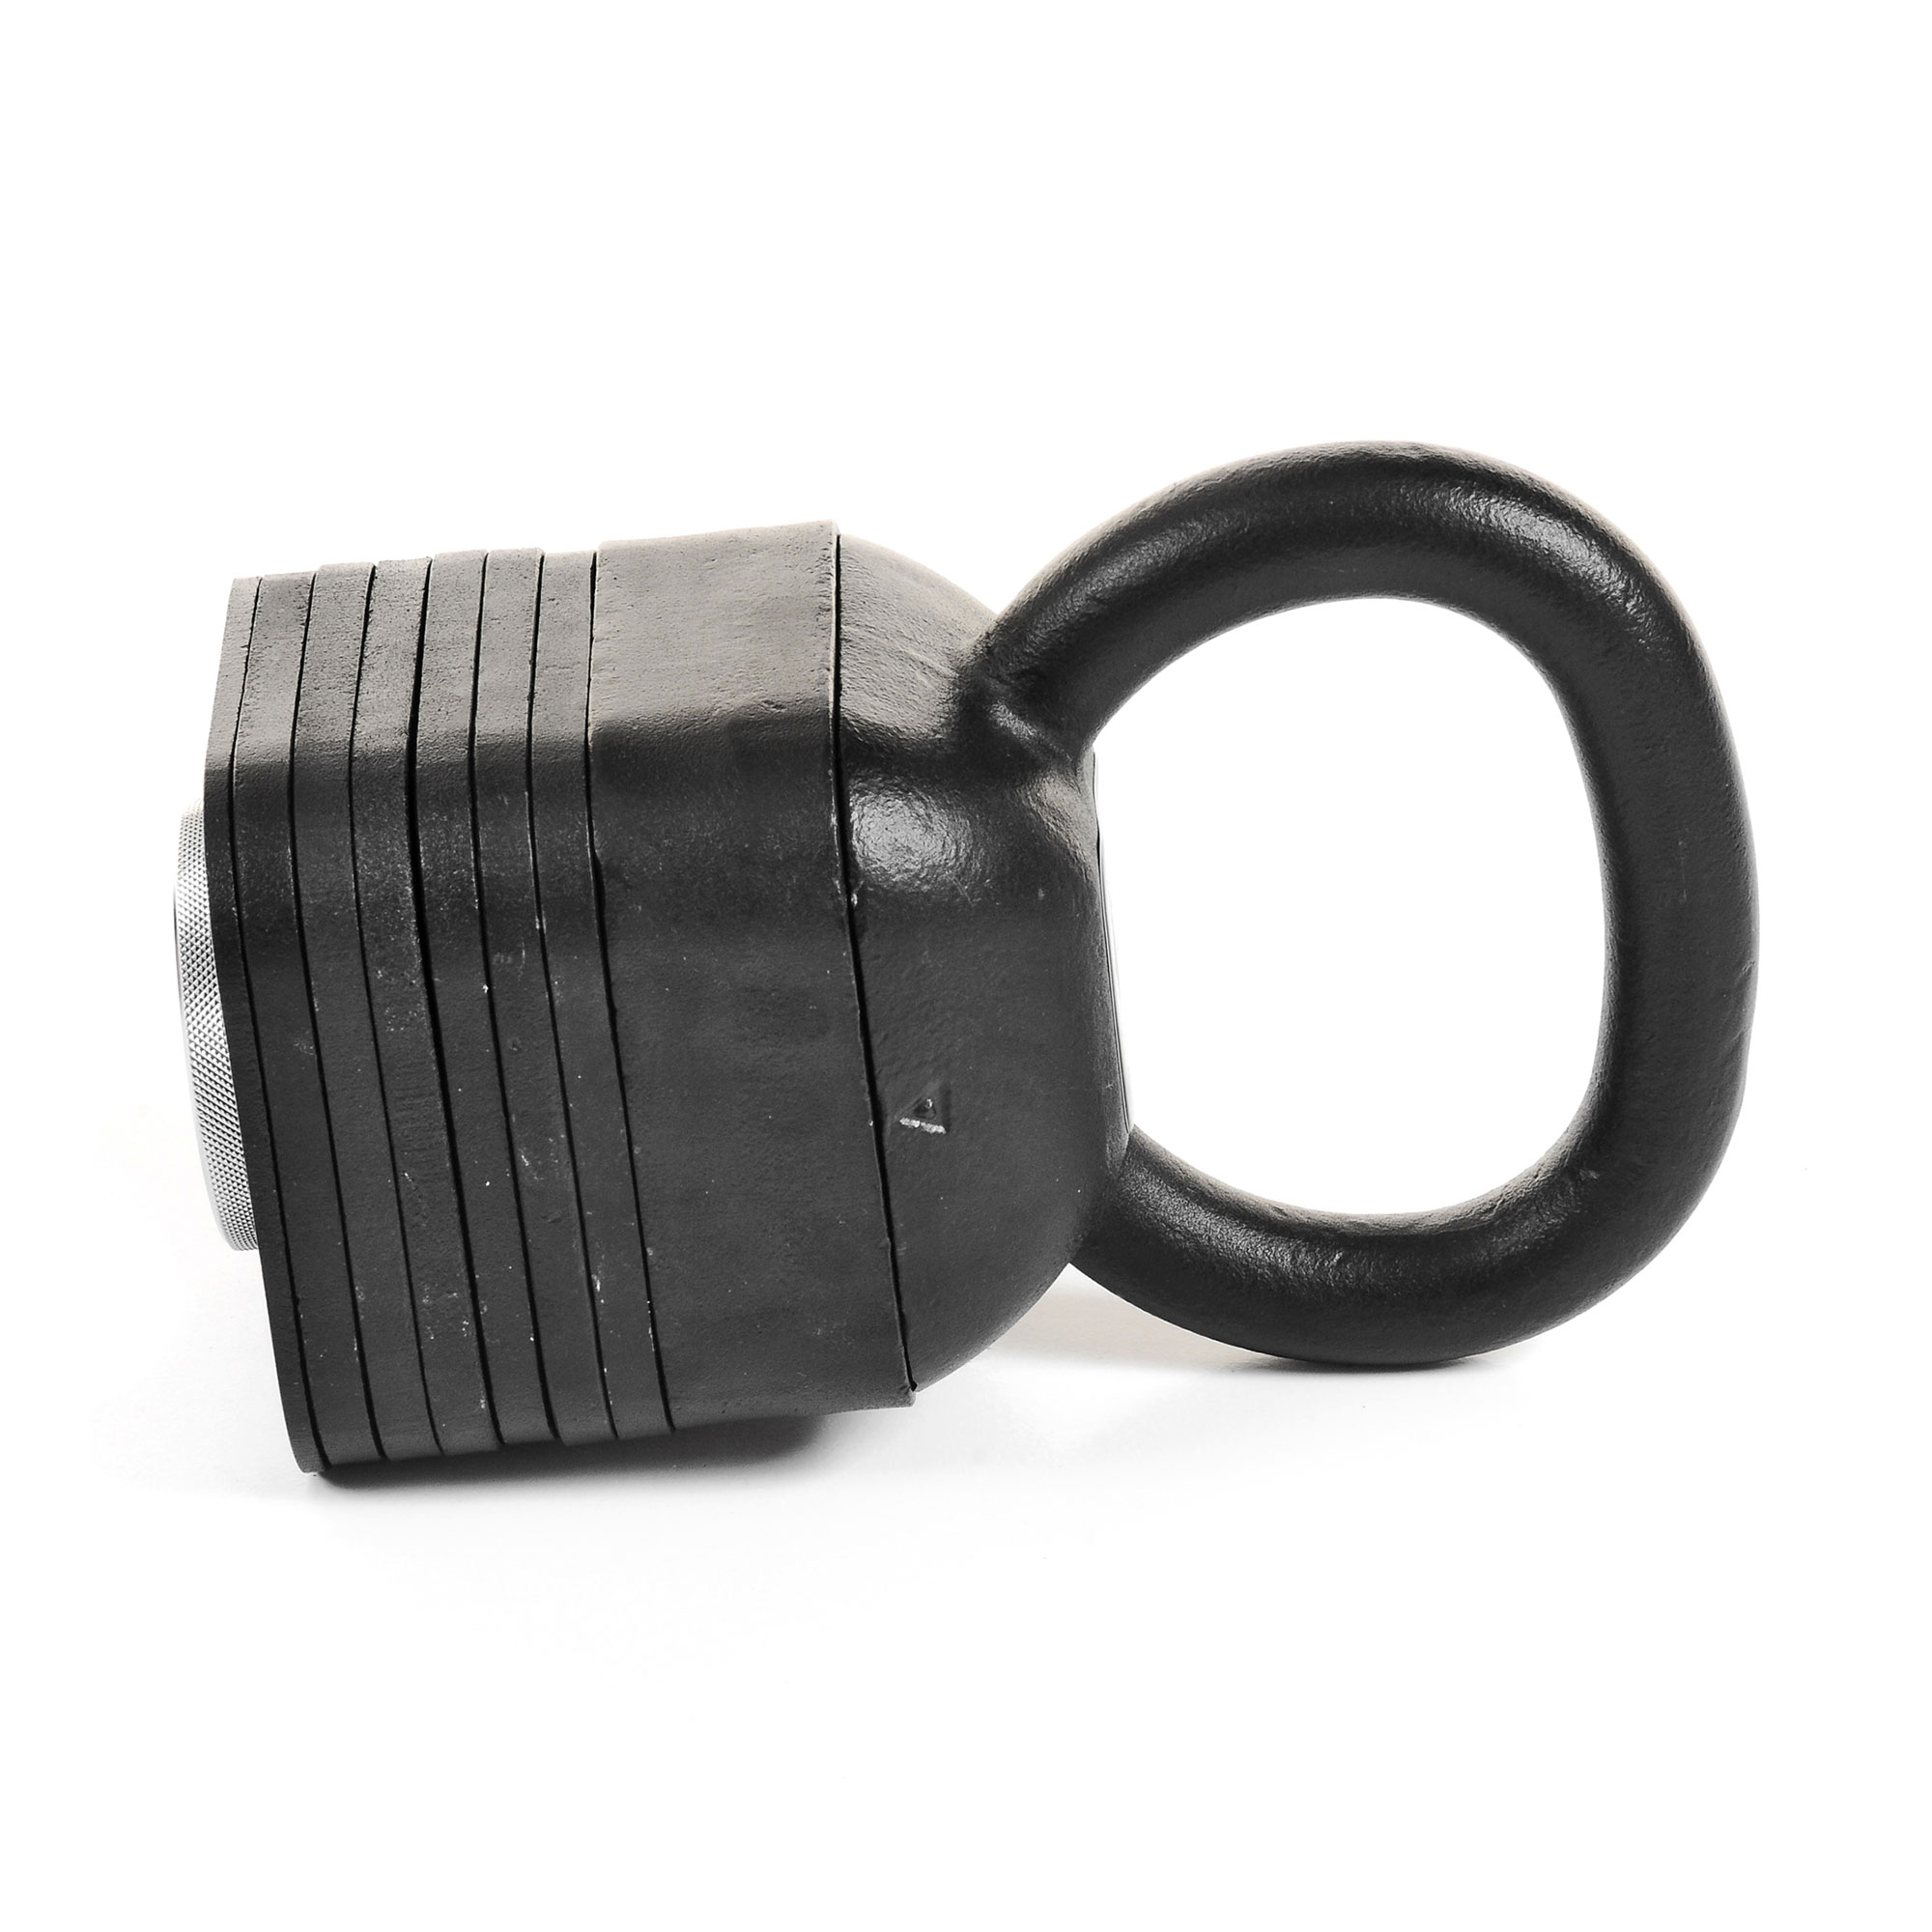 IronmasterUK kettlebell with weights